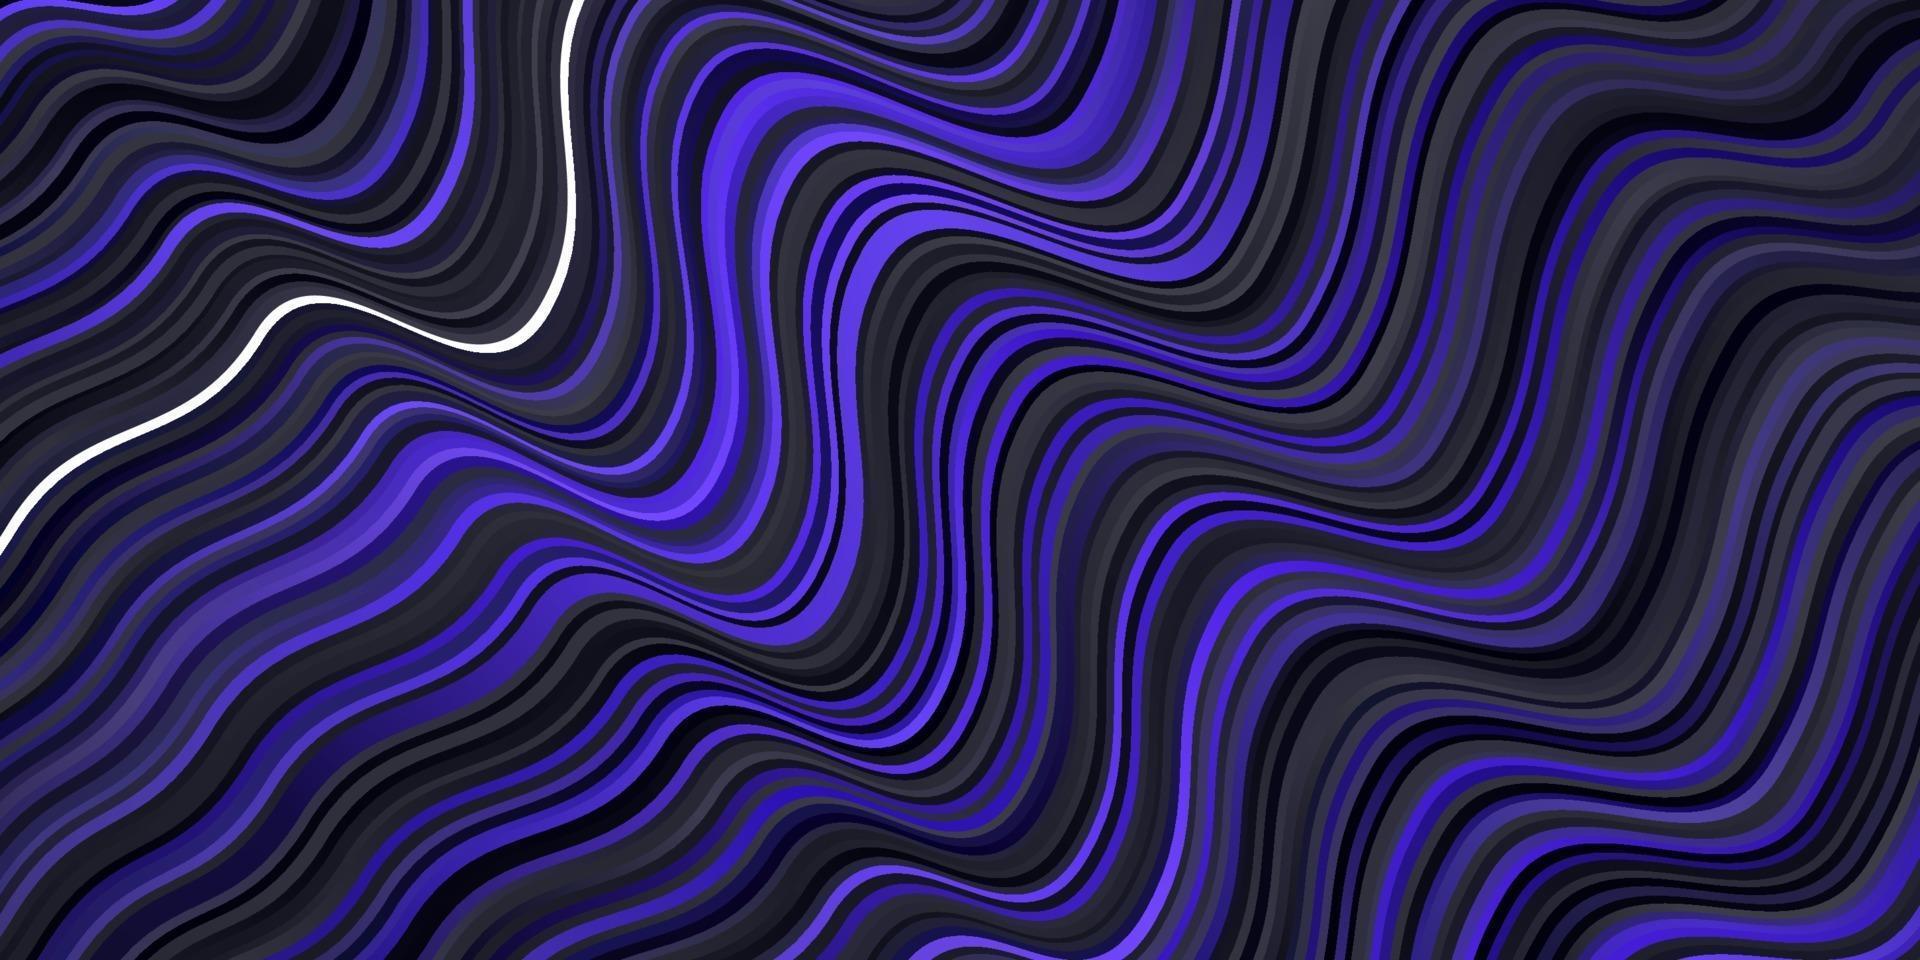 dunkelvioletter Vektorhintergrund mit gekrümmten Linien. vektor